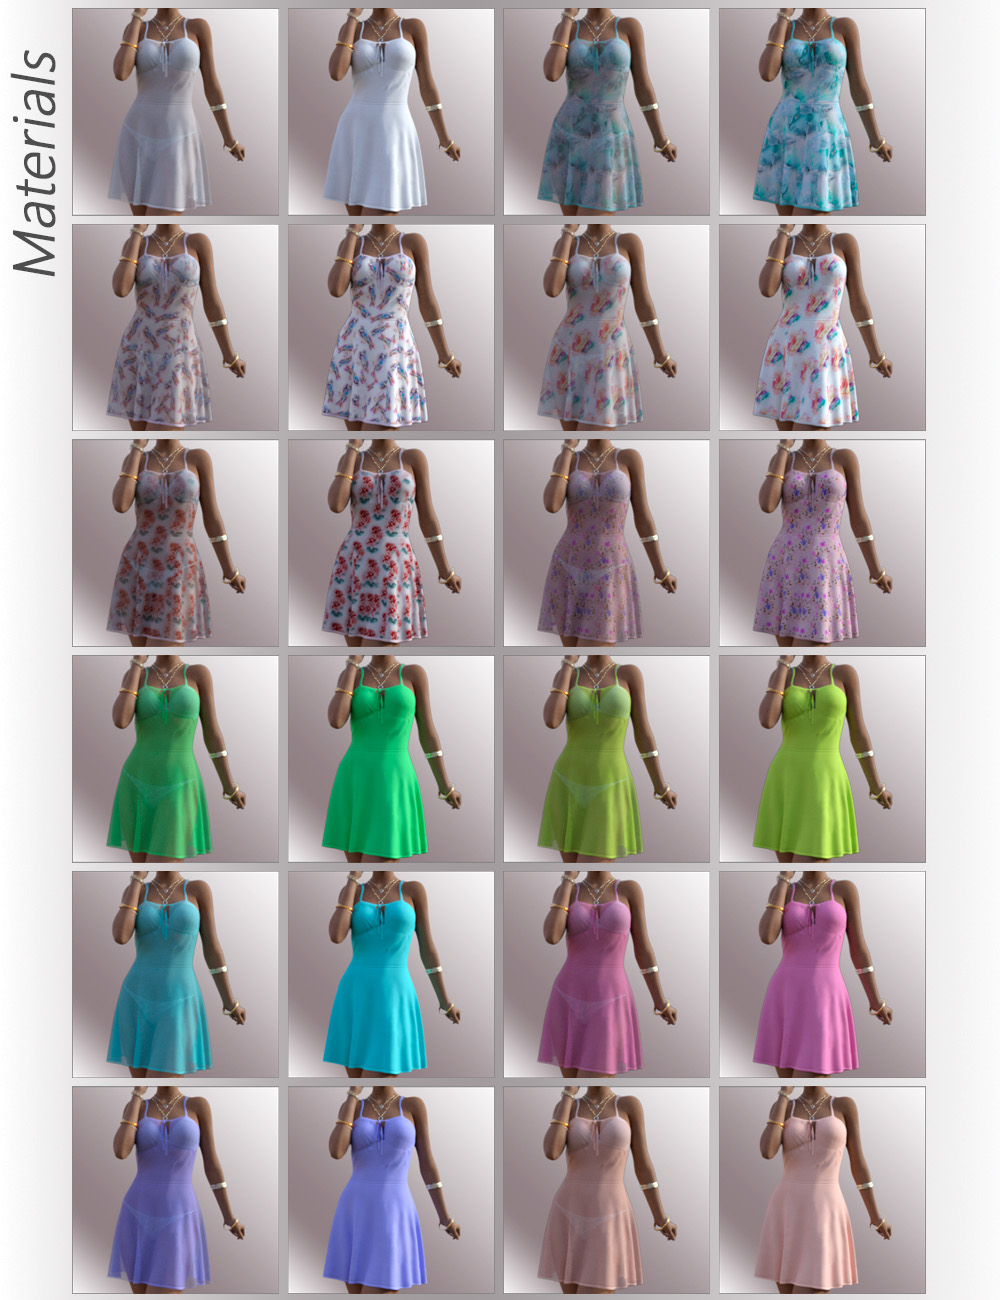 dForce Alika Candy Dress Outfit for Genesis 8 Female(s) by: OnnelArryn, 3D Models by Daz 3D